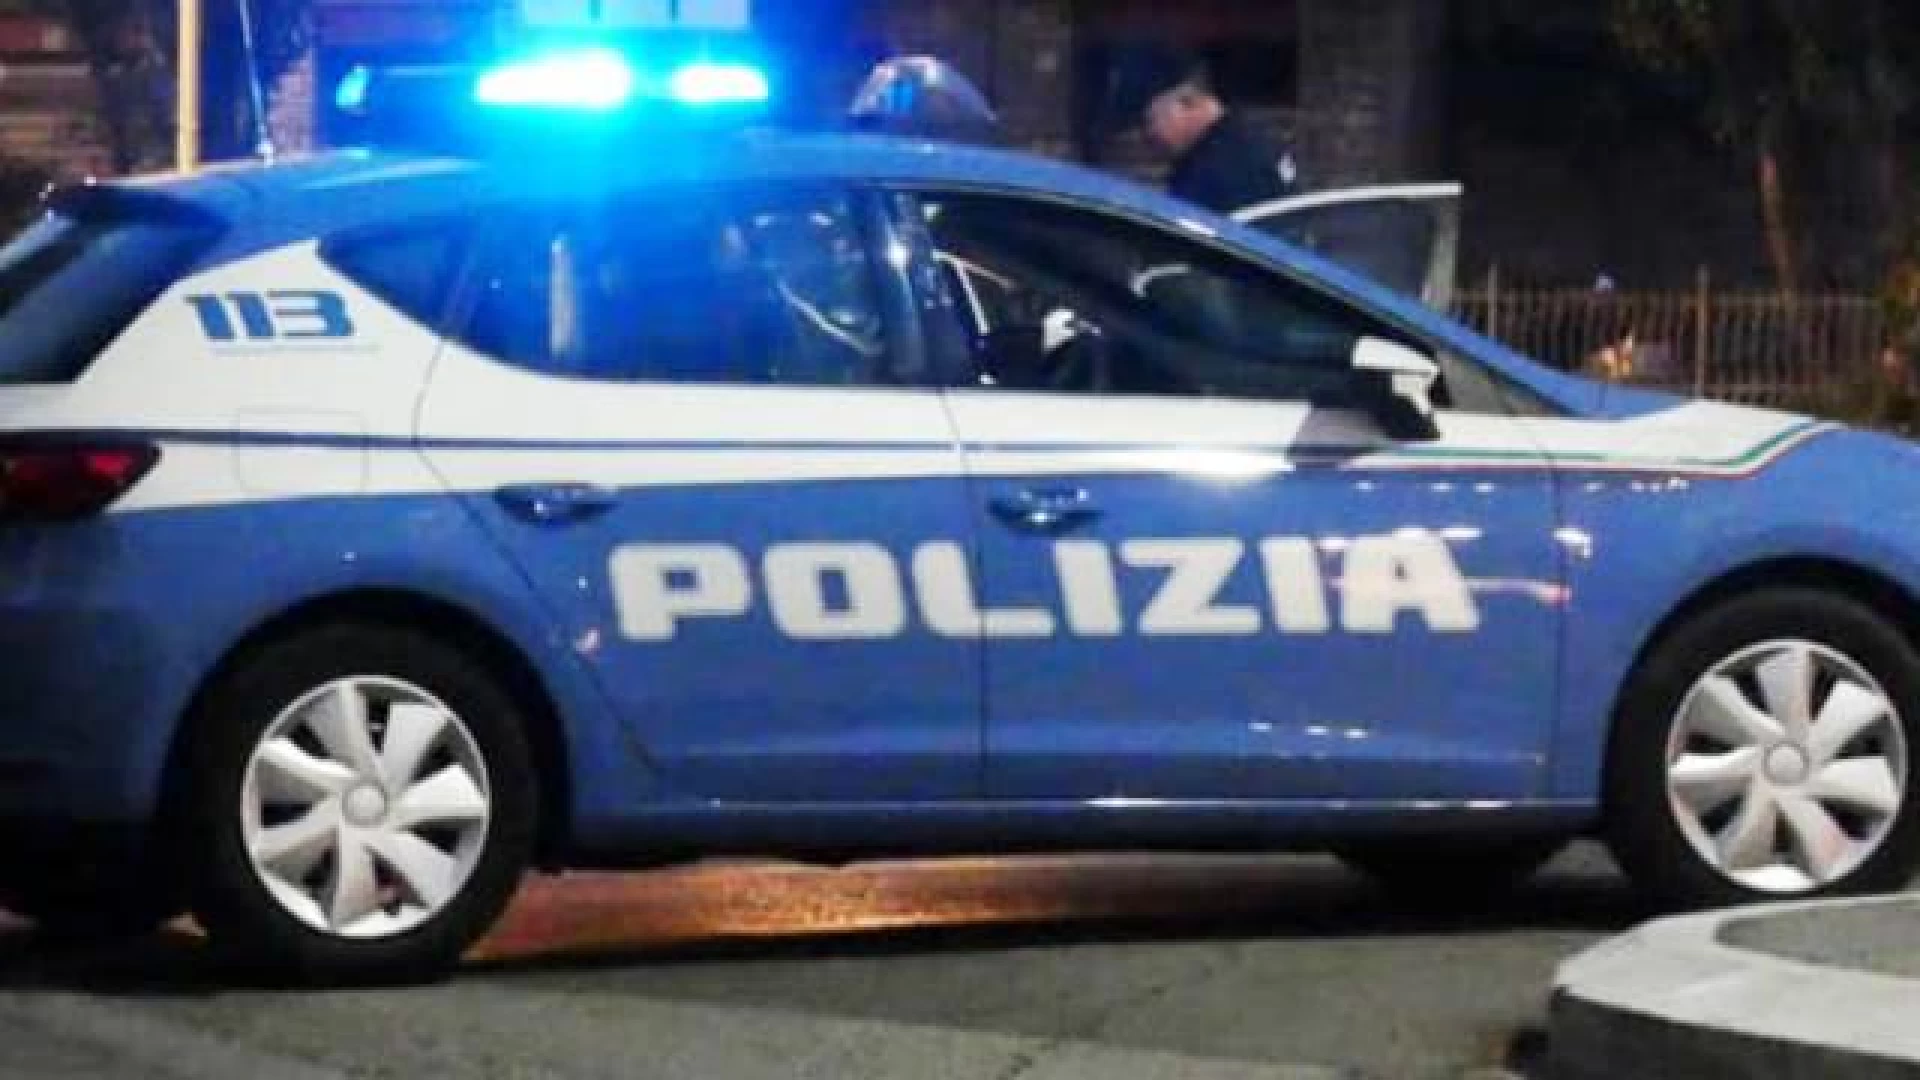 Isernia: movida nel centro storico, denunciati i titolari di un esercizio pubblico dalla Polizia.